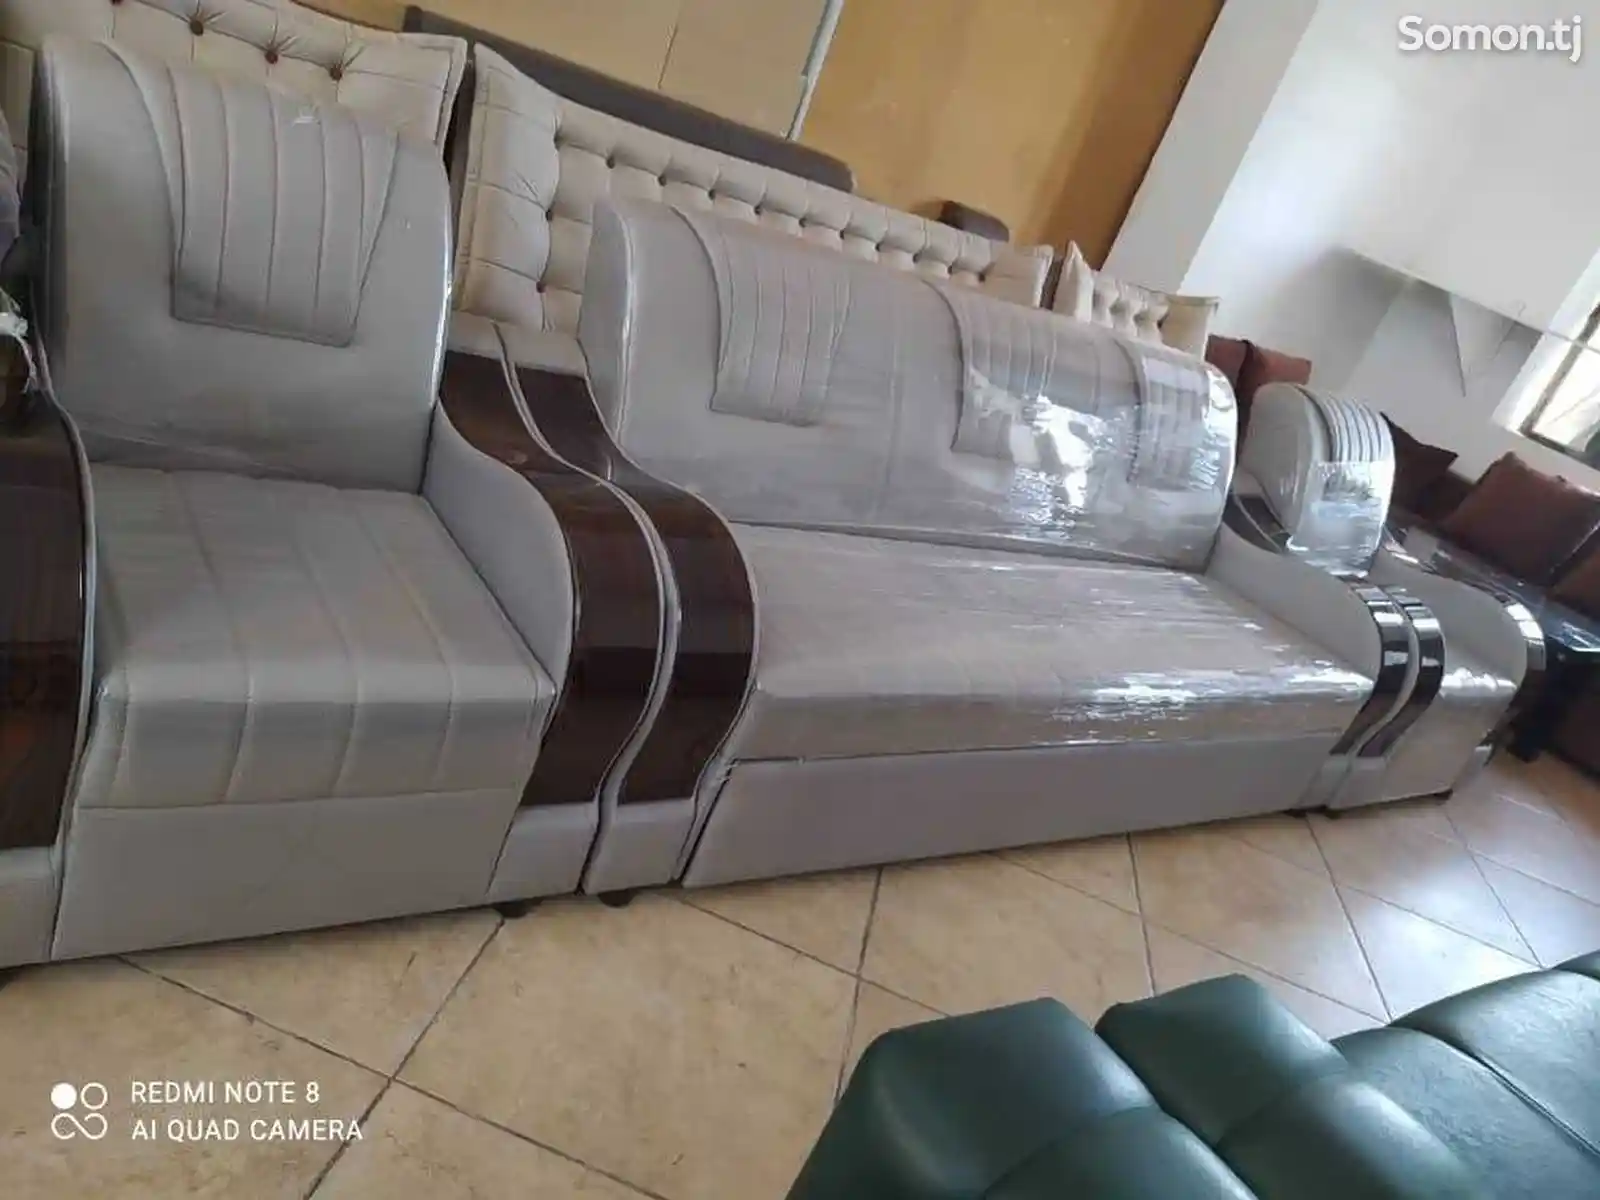 Кресла и диван